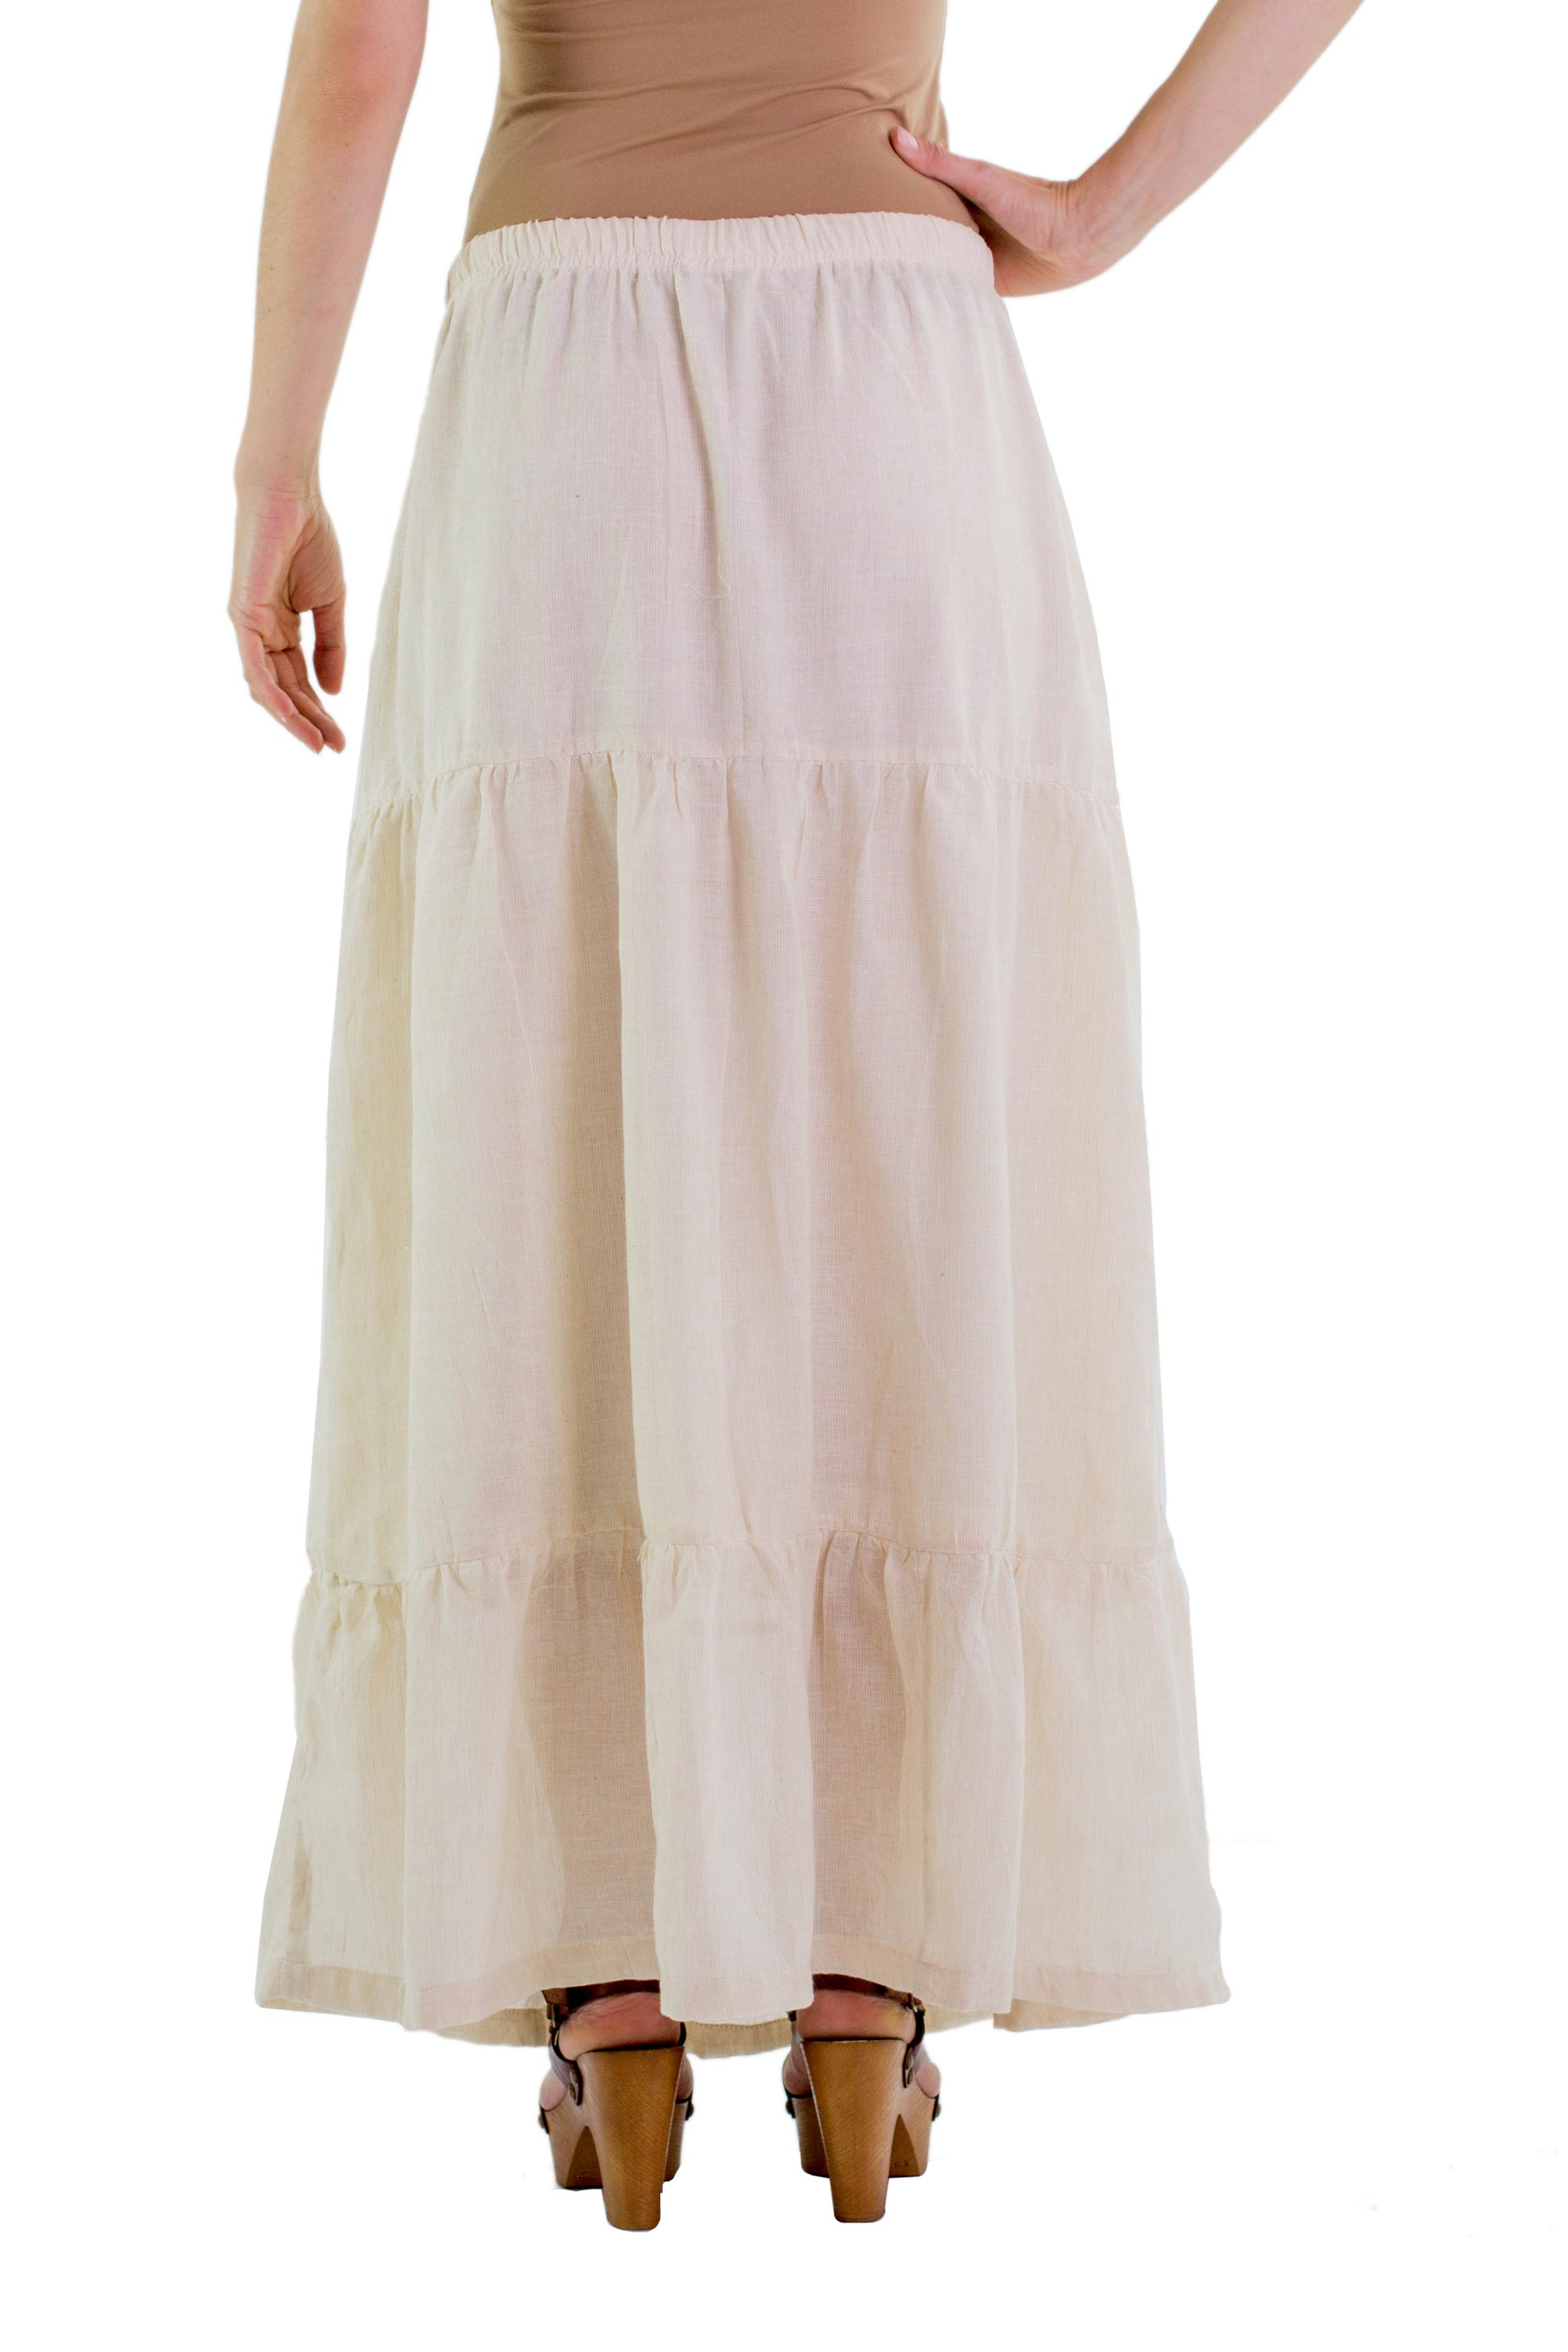 Women's Long Tiered Cotton Skirt - Naturally Modern | NOVICA